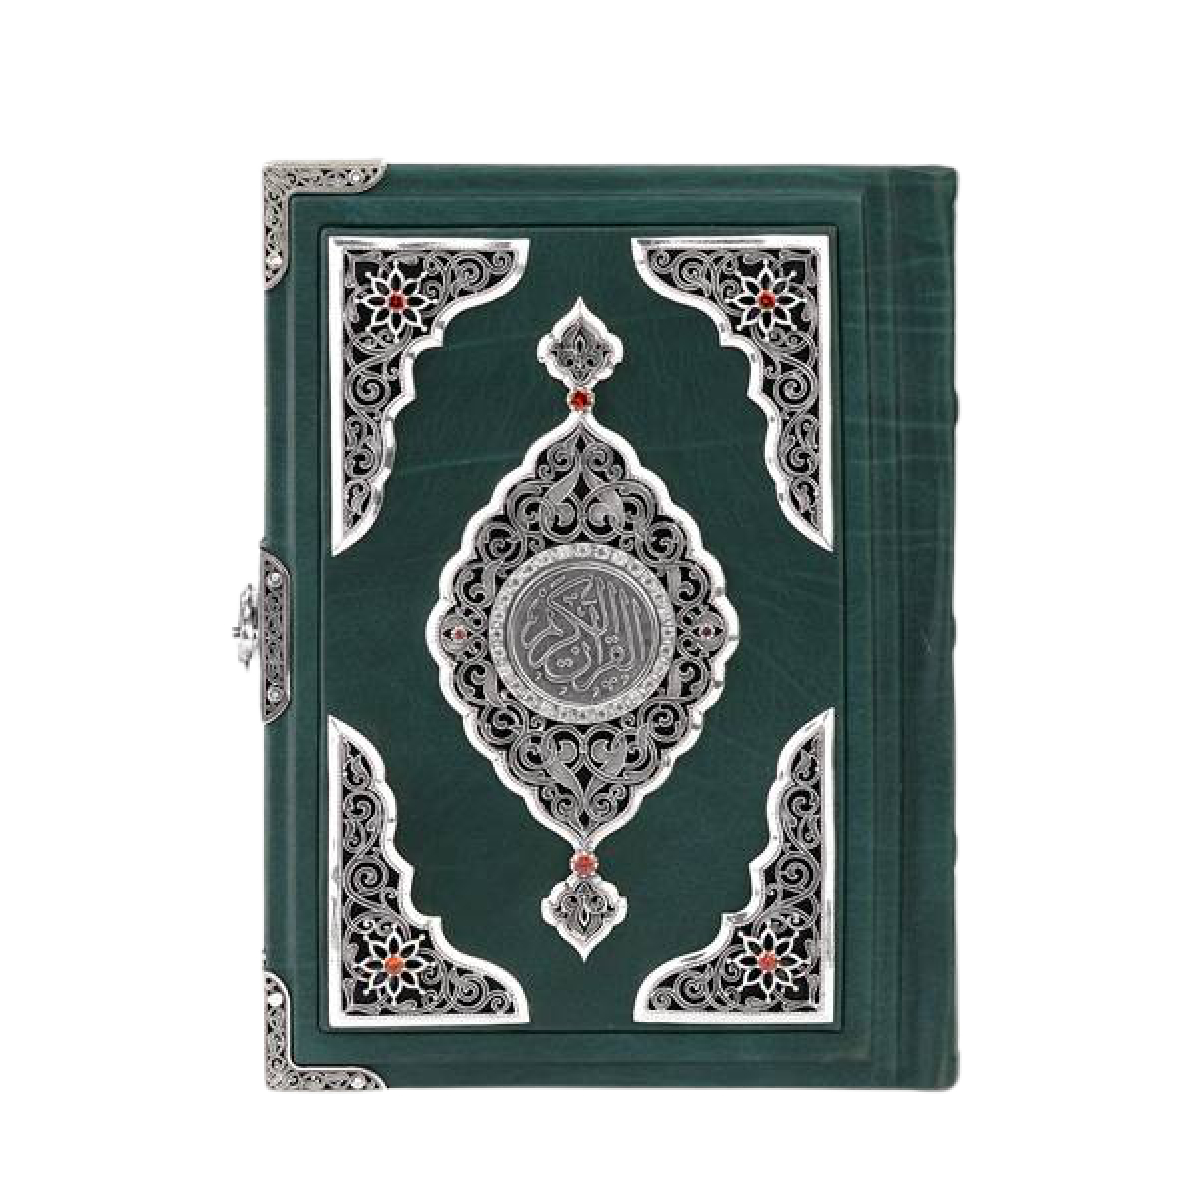 Коран Великолепие в кожаном переплете и серебре (один замок)Фото 27143-01.jpg